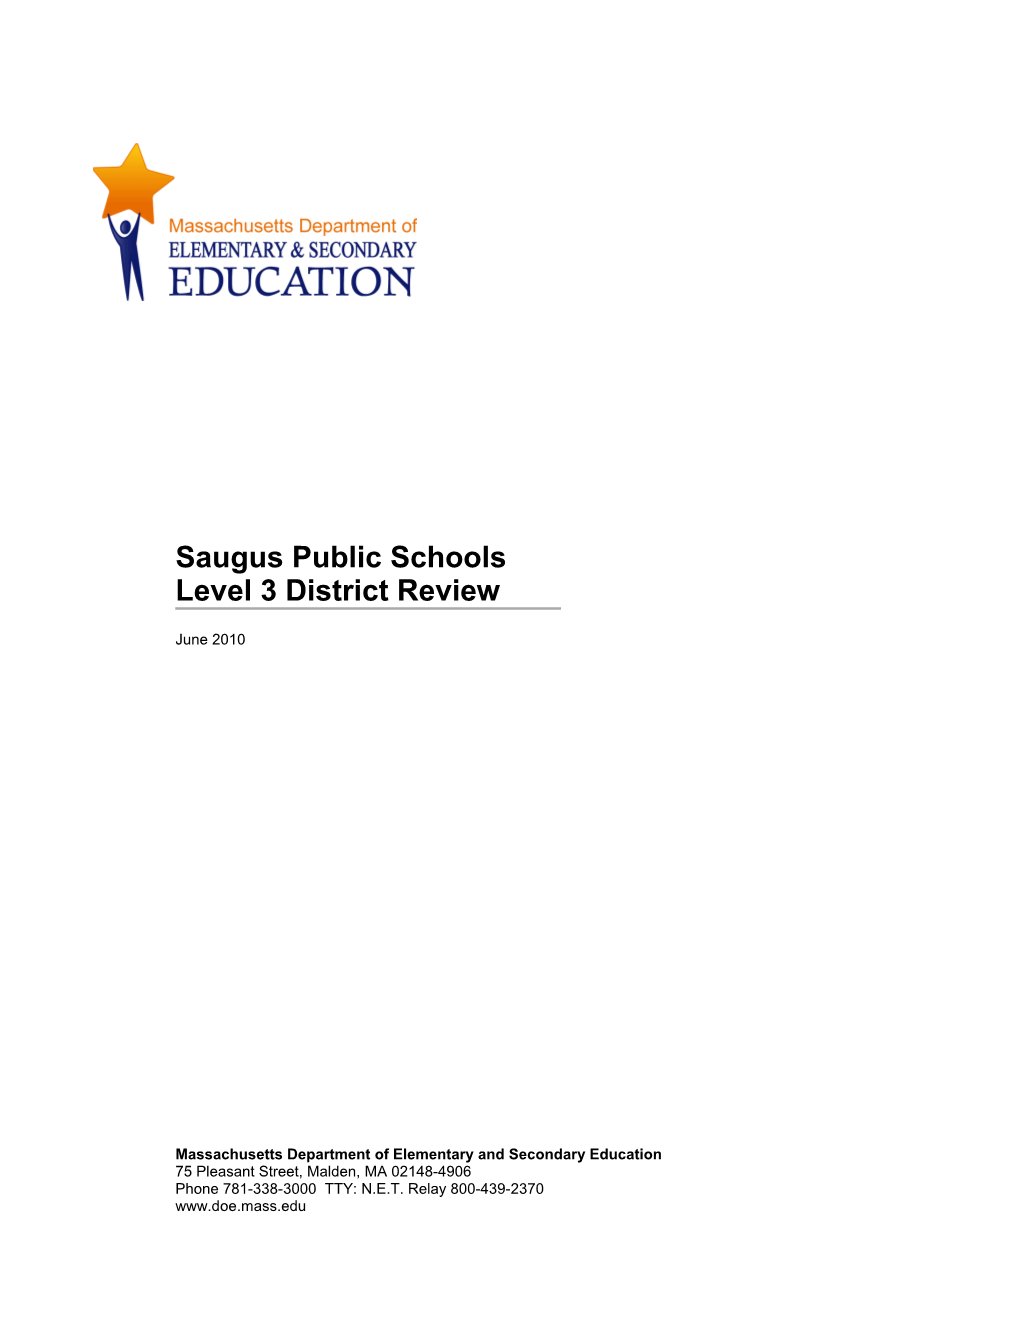 Saugus Public Schools, Level 3 Review Report, June 2010